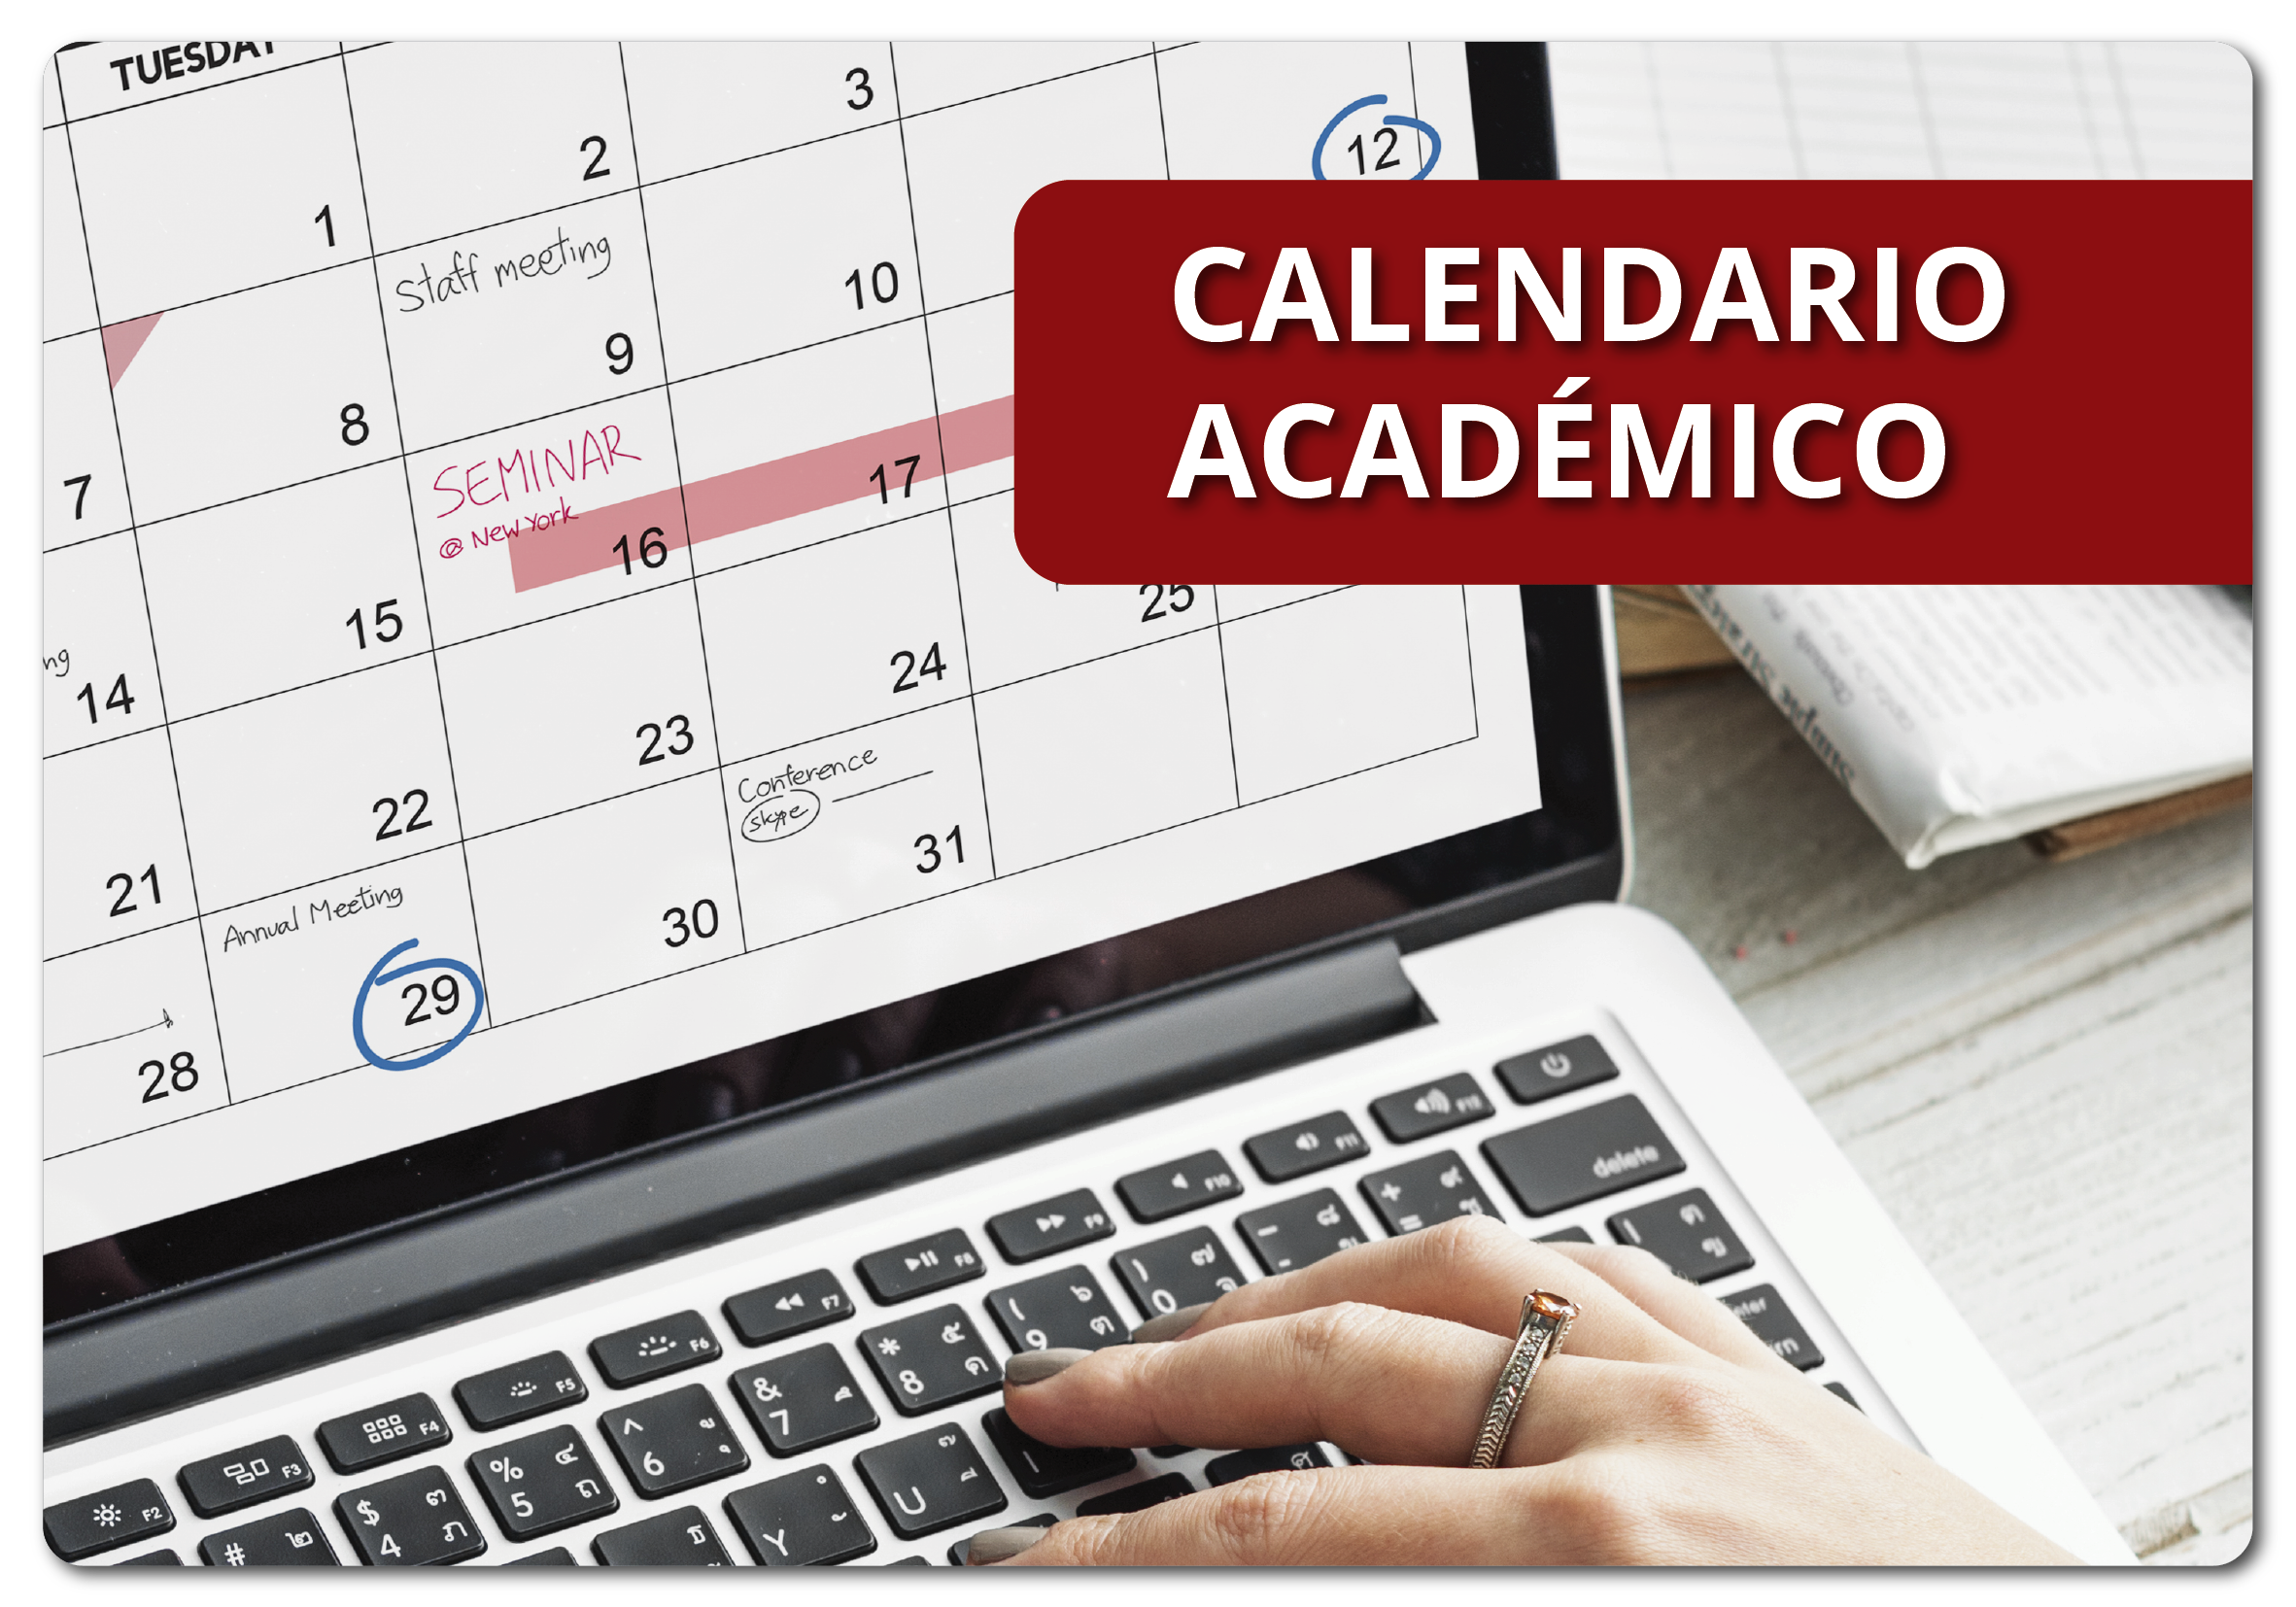 Calendario academico